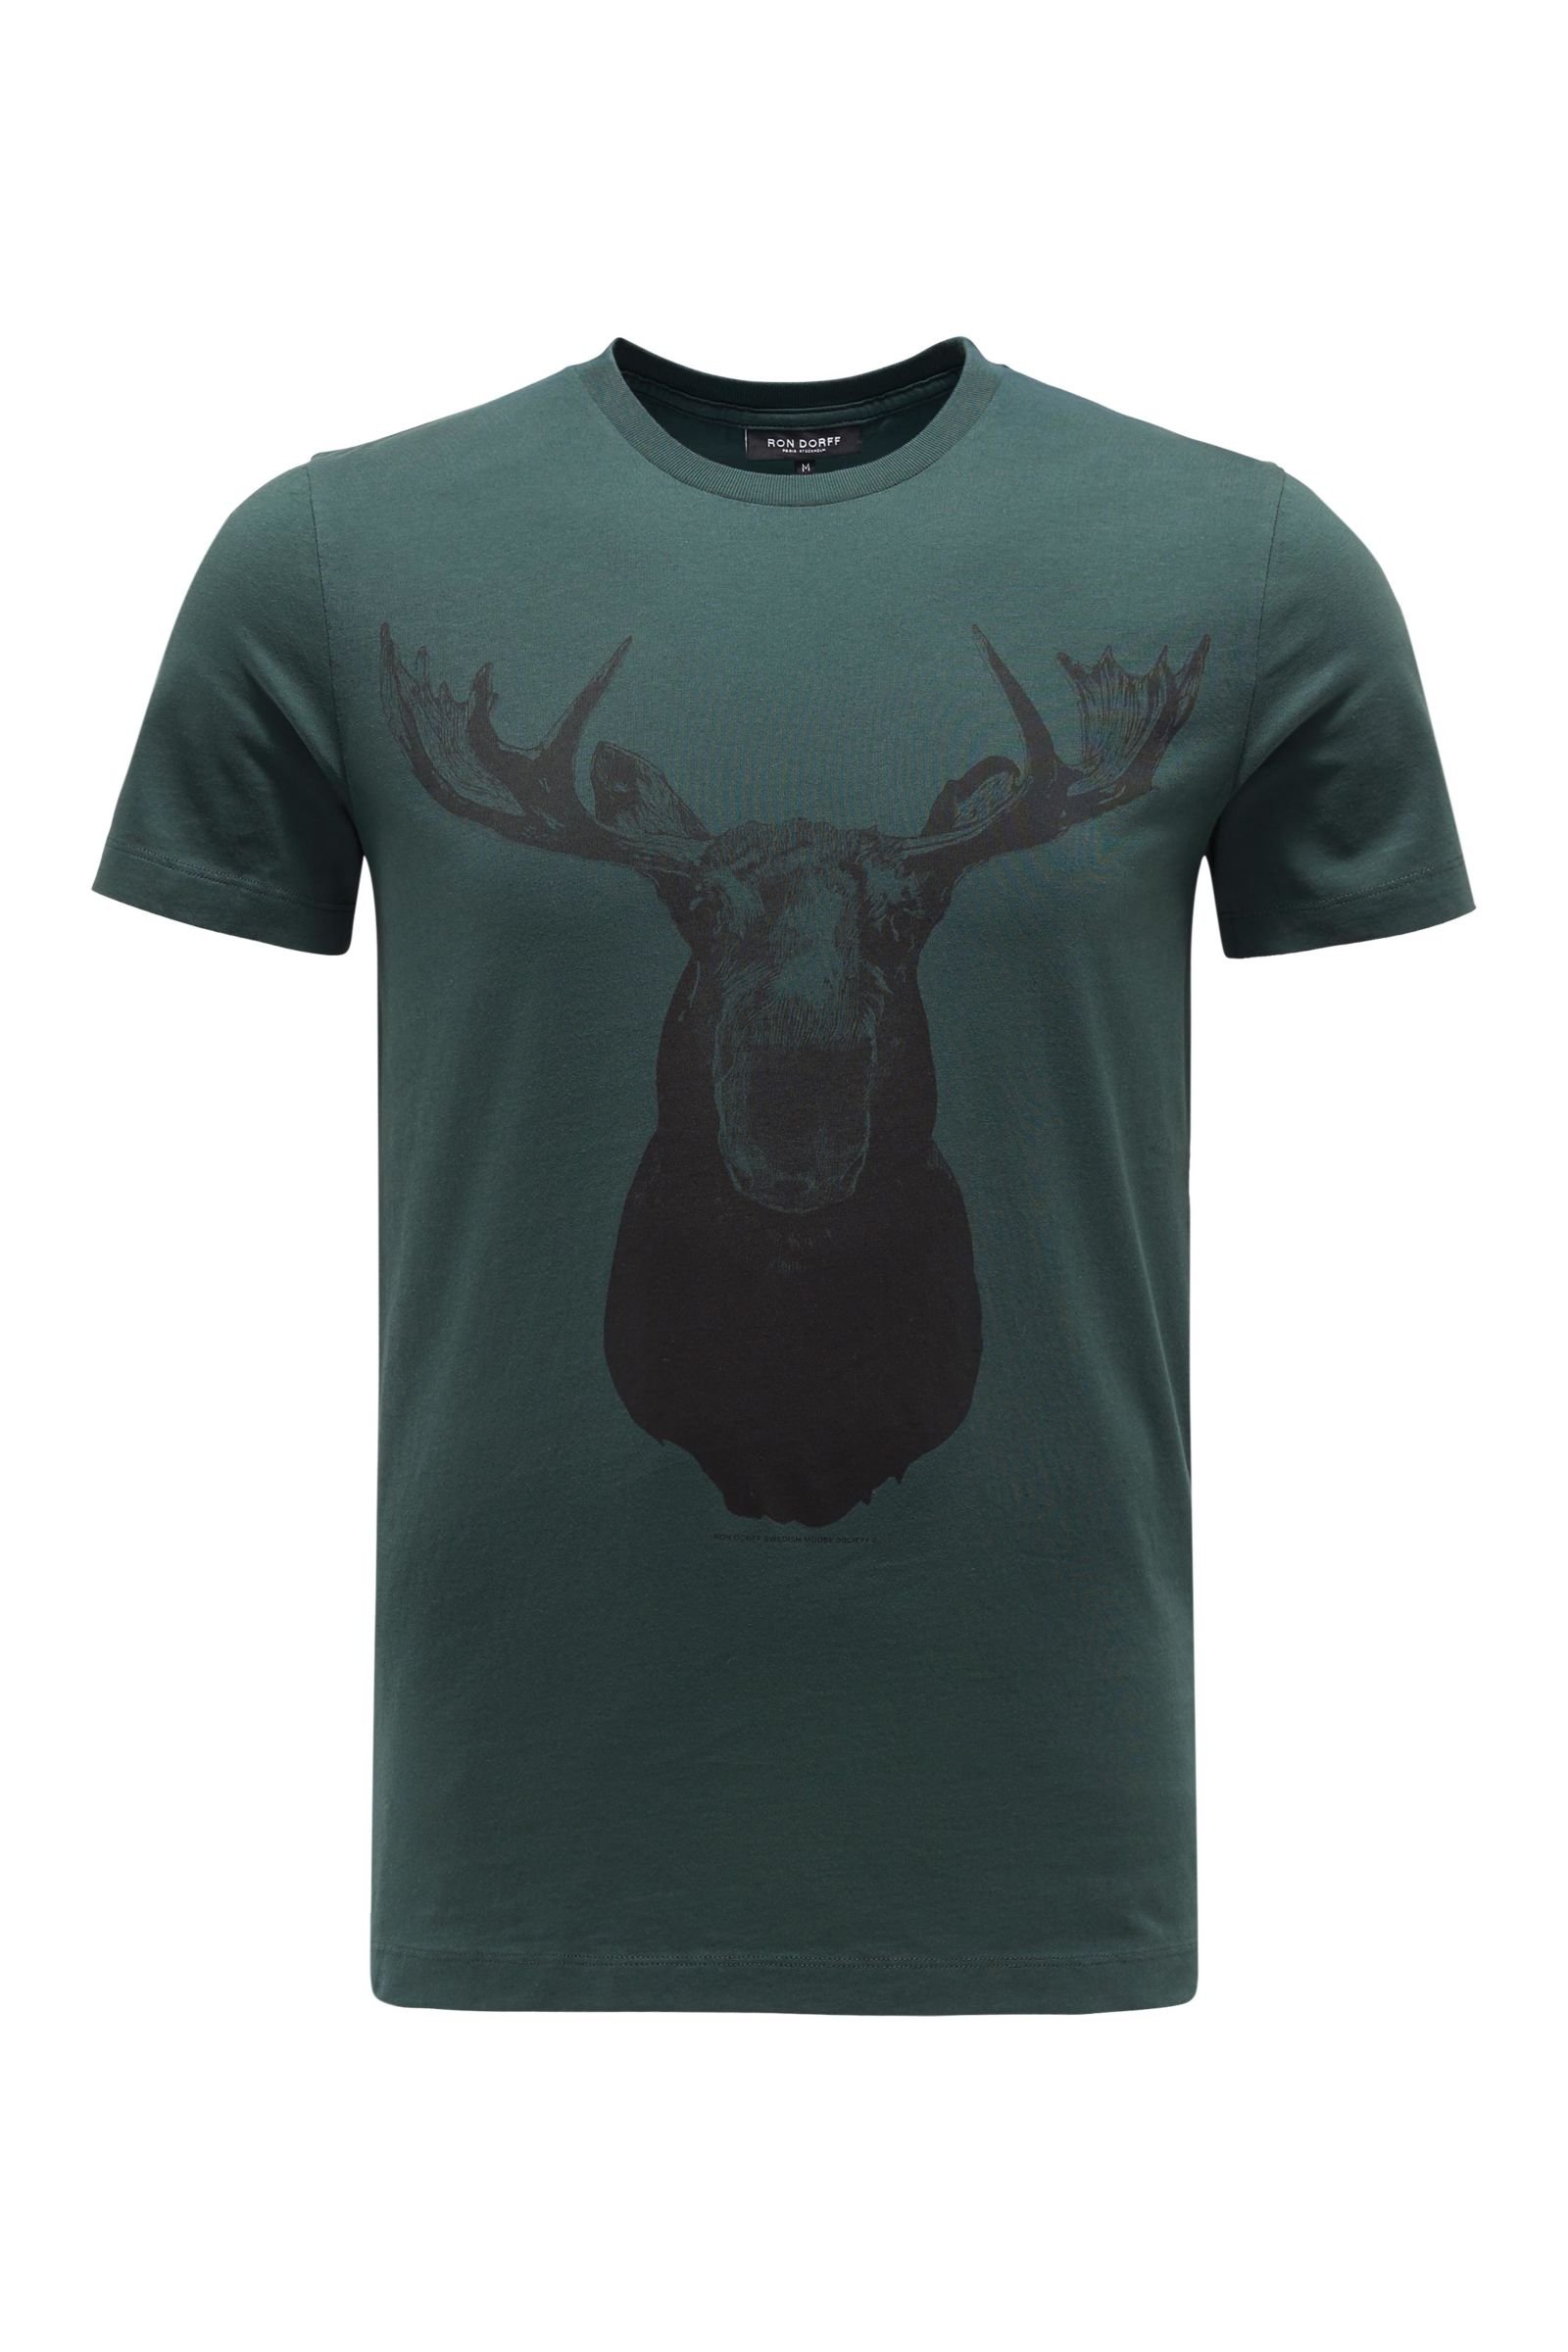 R-Neck T-Shirt 'Moose' dunkelgrün